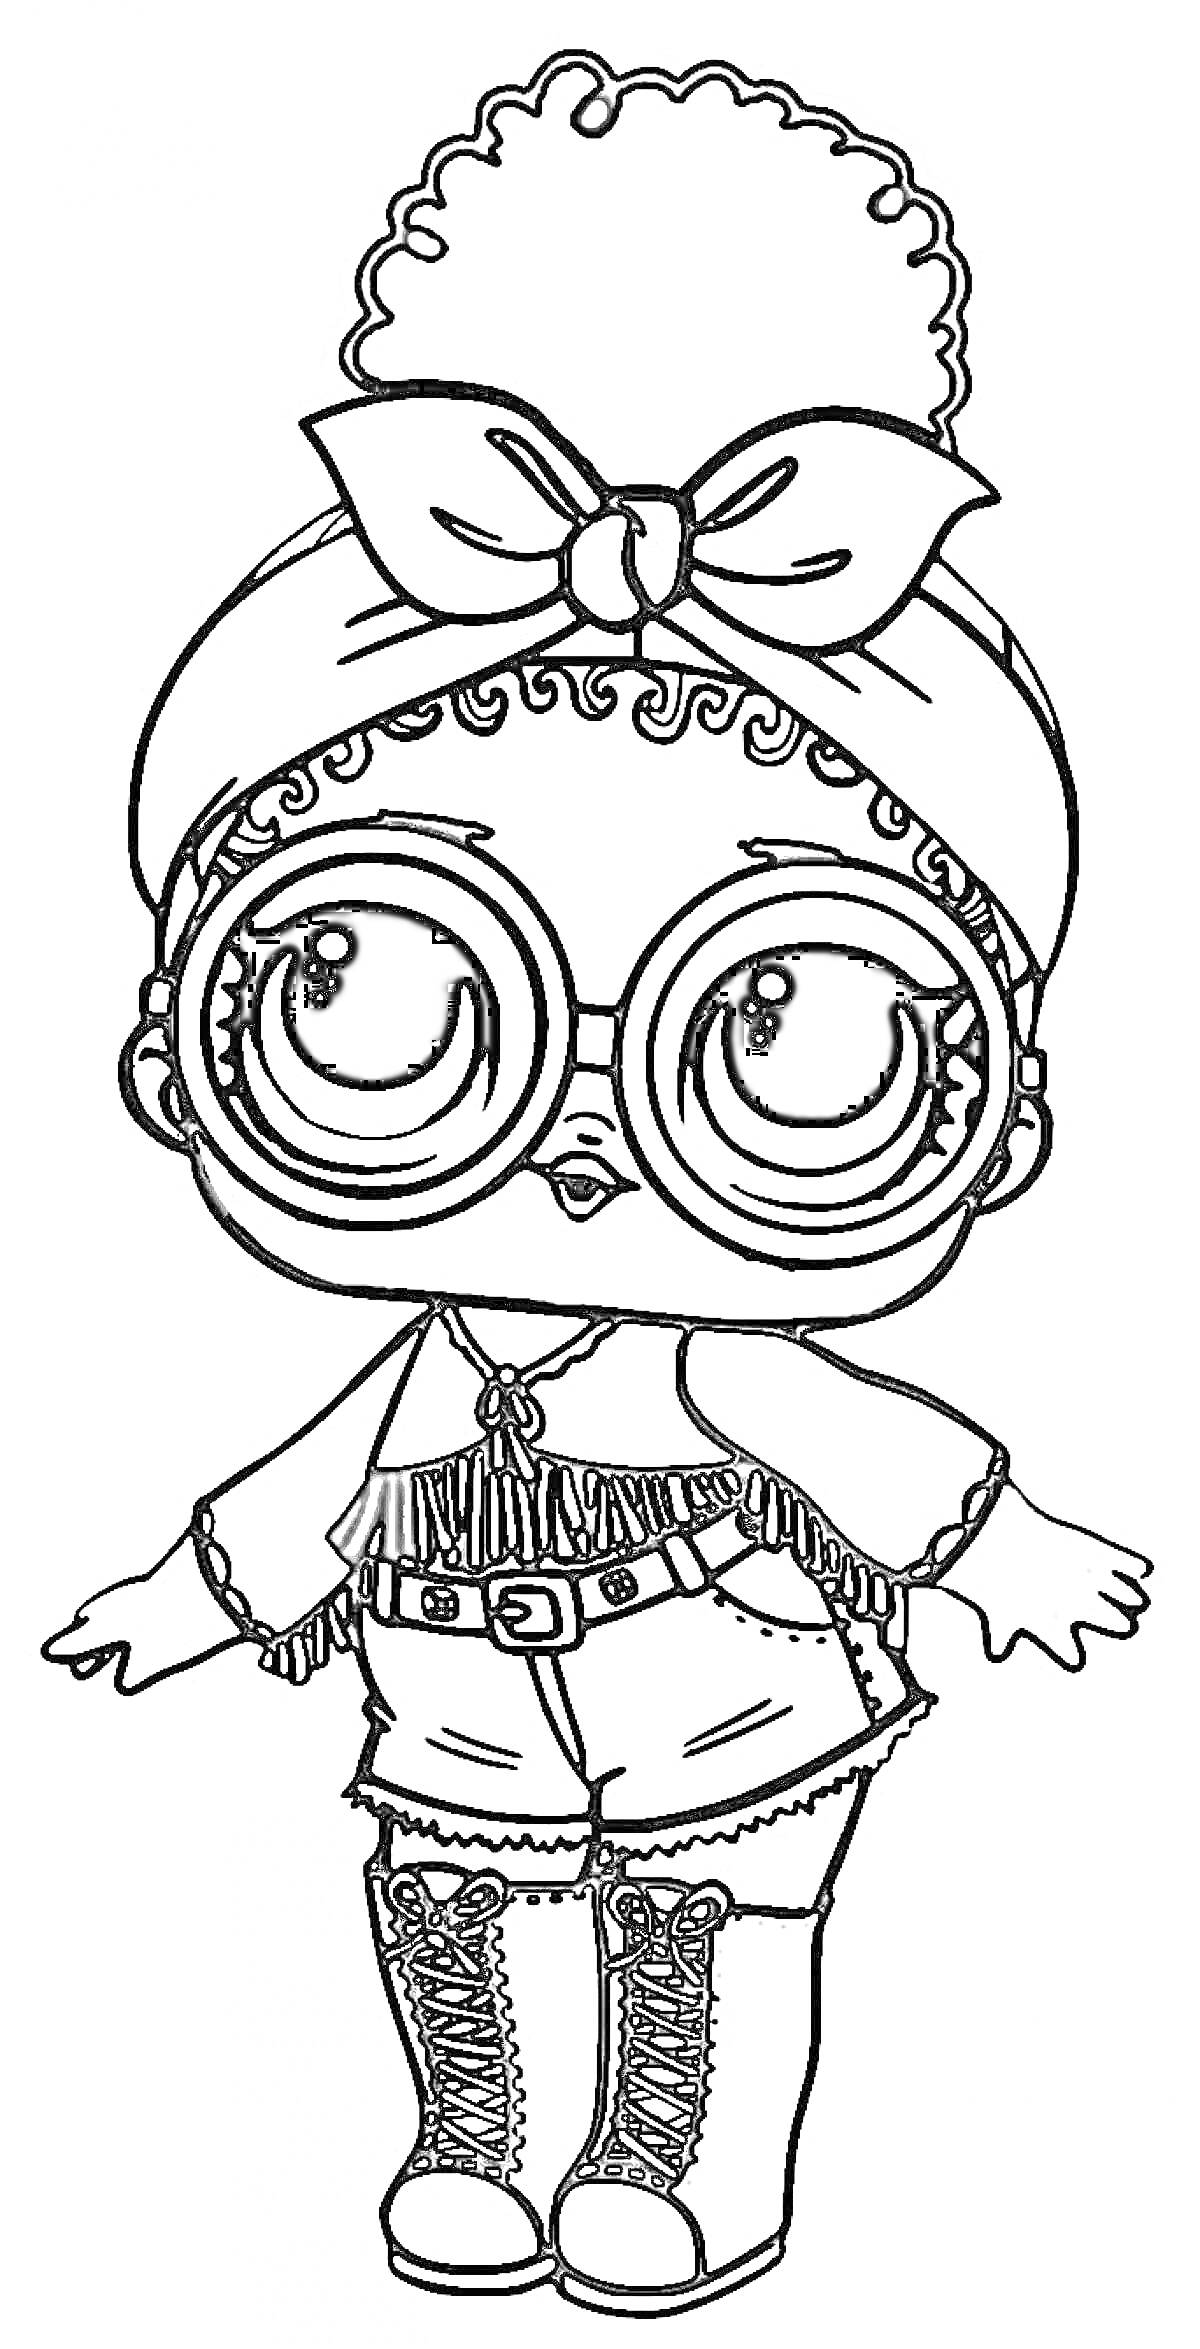 Кукла Лол с большими круглыми очками, бантом на голове, в шортах, сапогах до колен и длинным рукавом